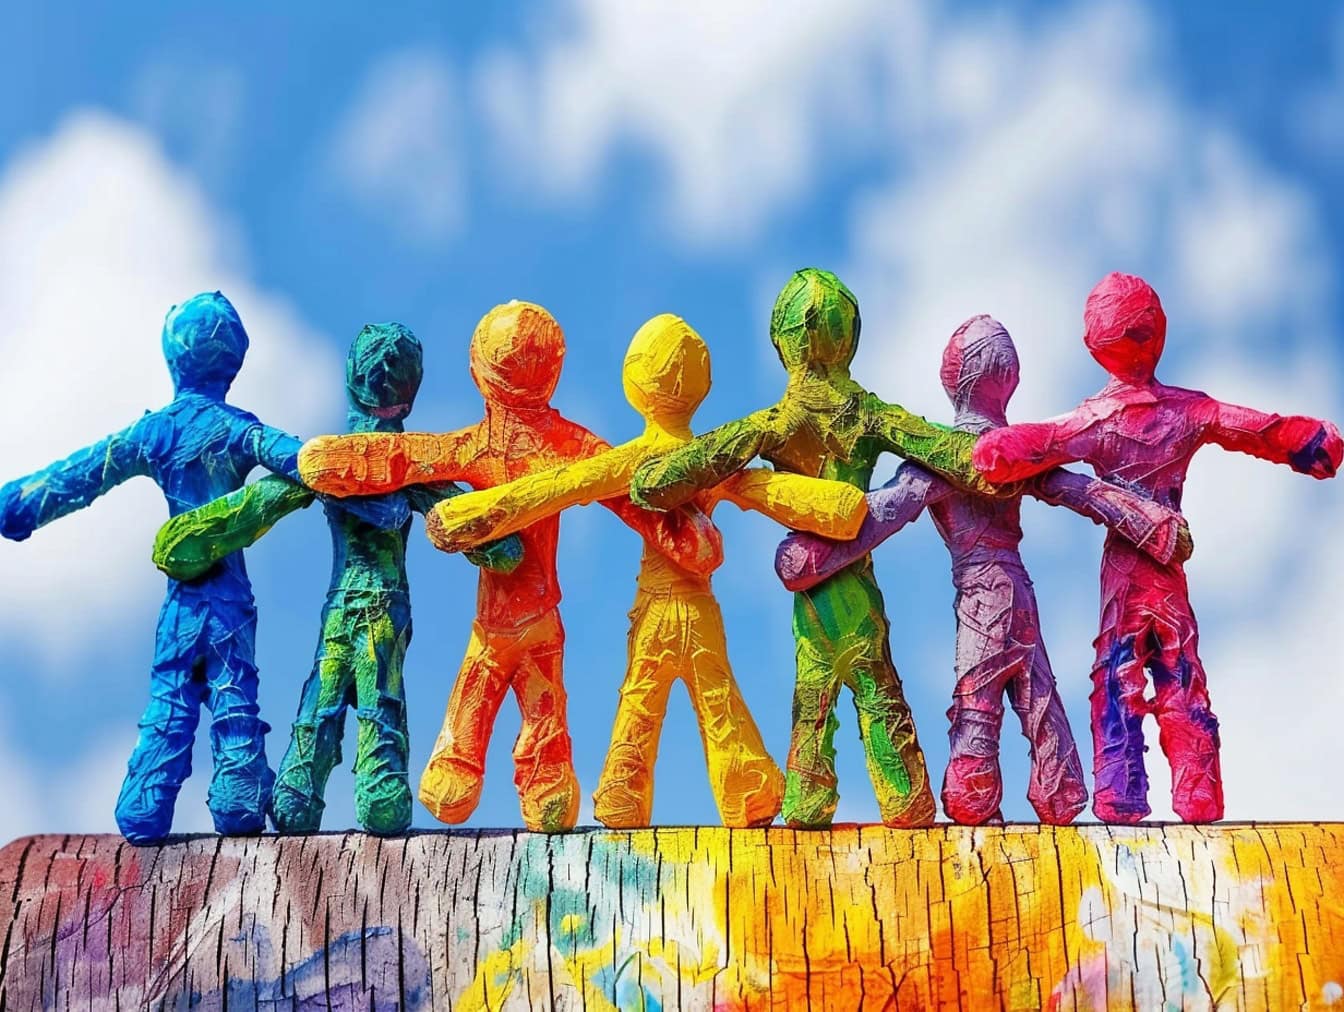 Những bức tượng giấy đầy màu sắc nắm tay nhau, một minh họa về sự đoàn kết, khoan dung và bình đẳng giữa các nhóm dân tộc khác nhau